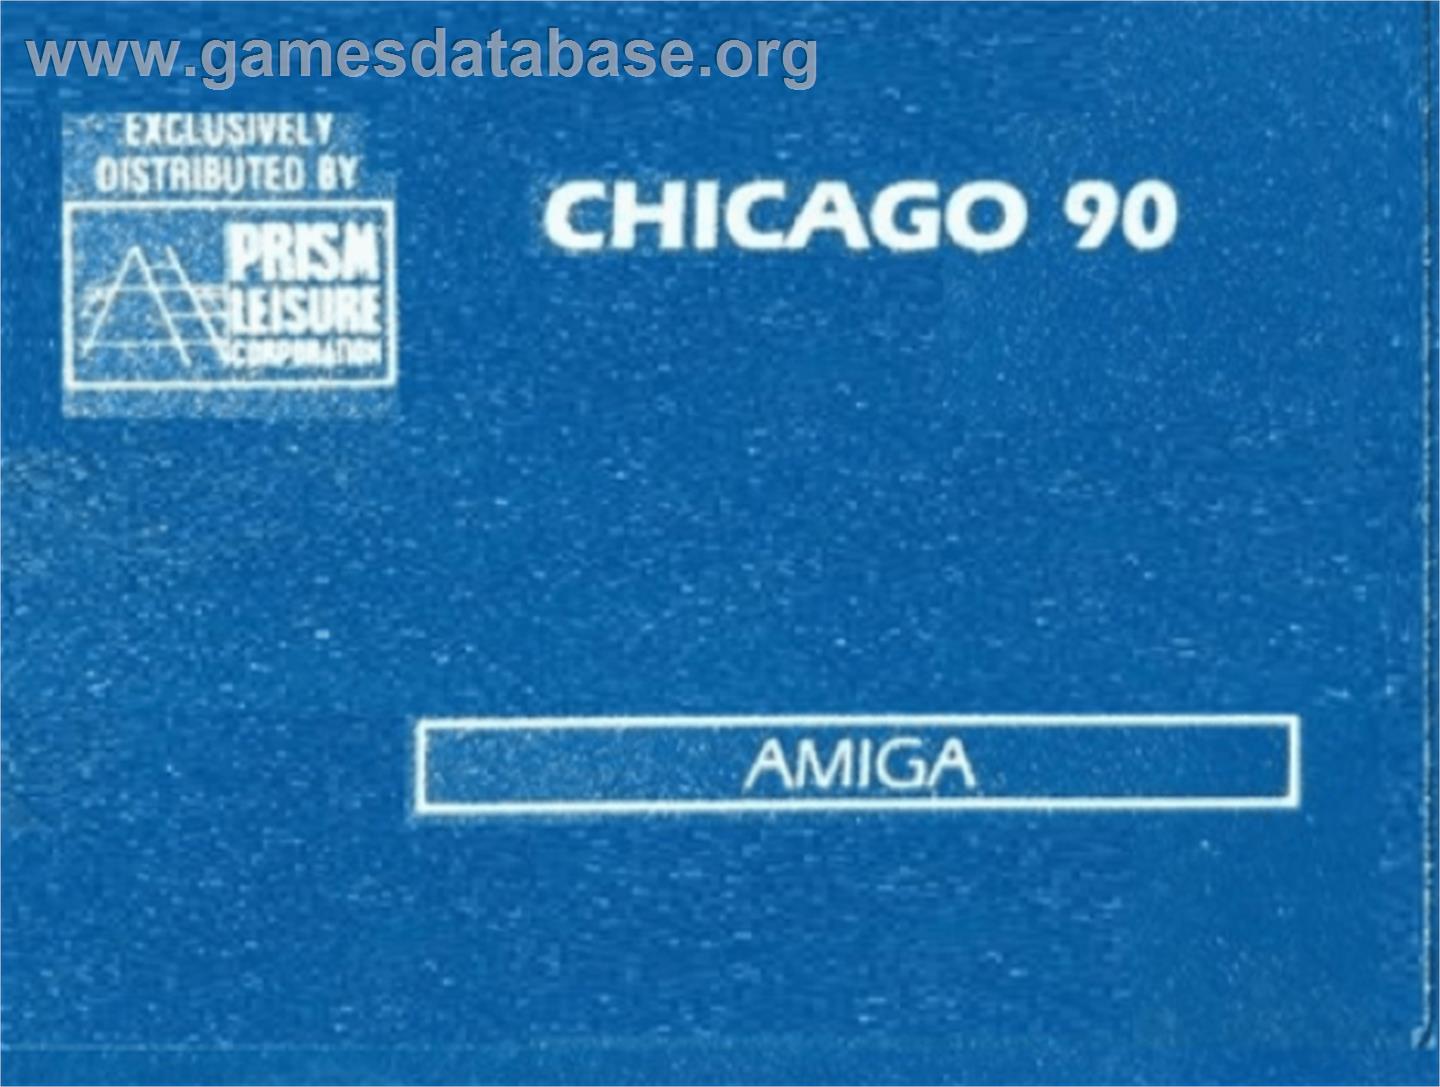 Chicago 90 - Commodore Amiga - Artwork - Cartridge Top